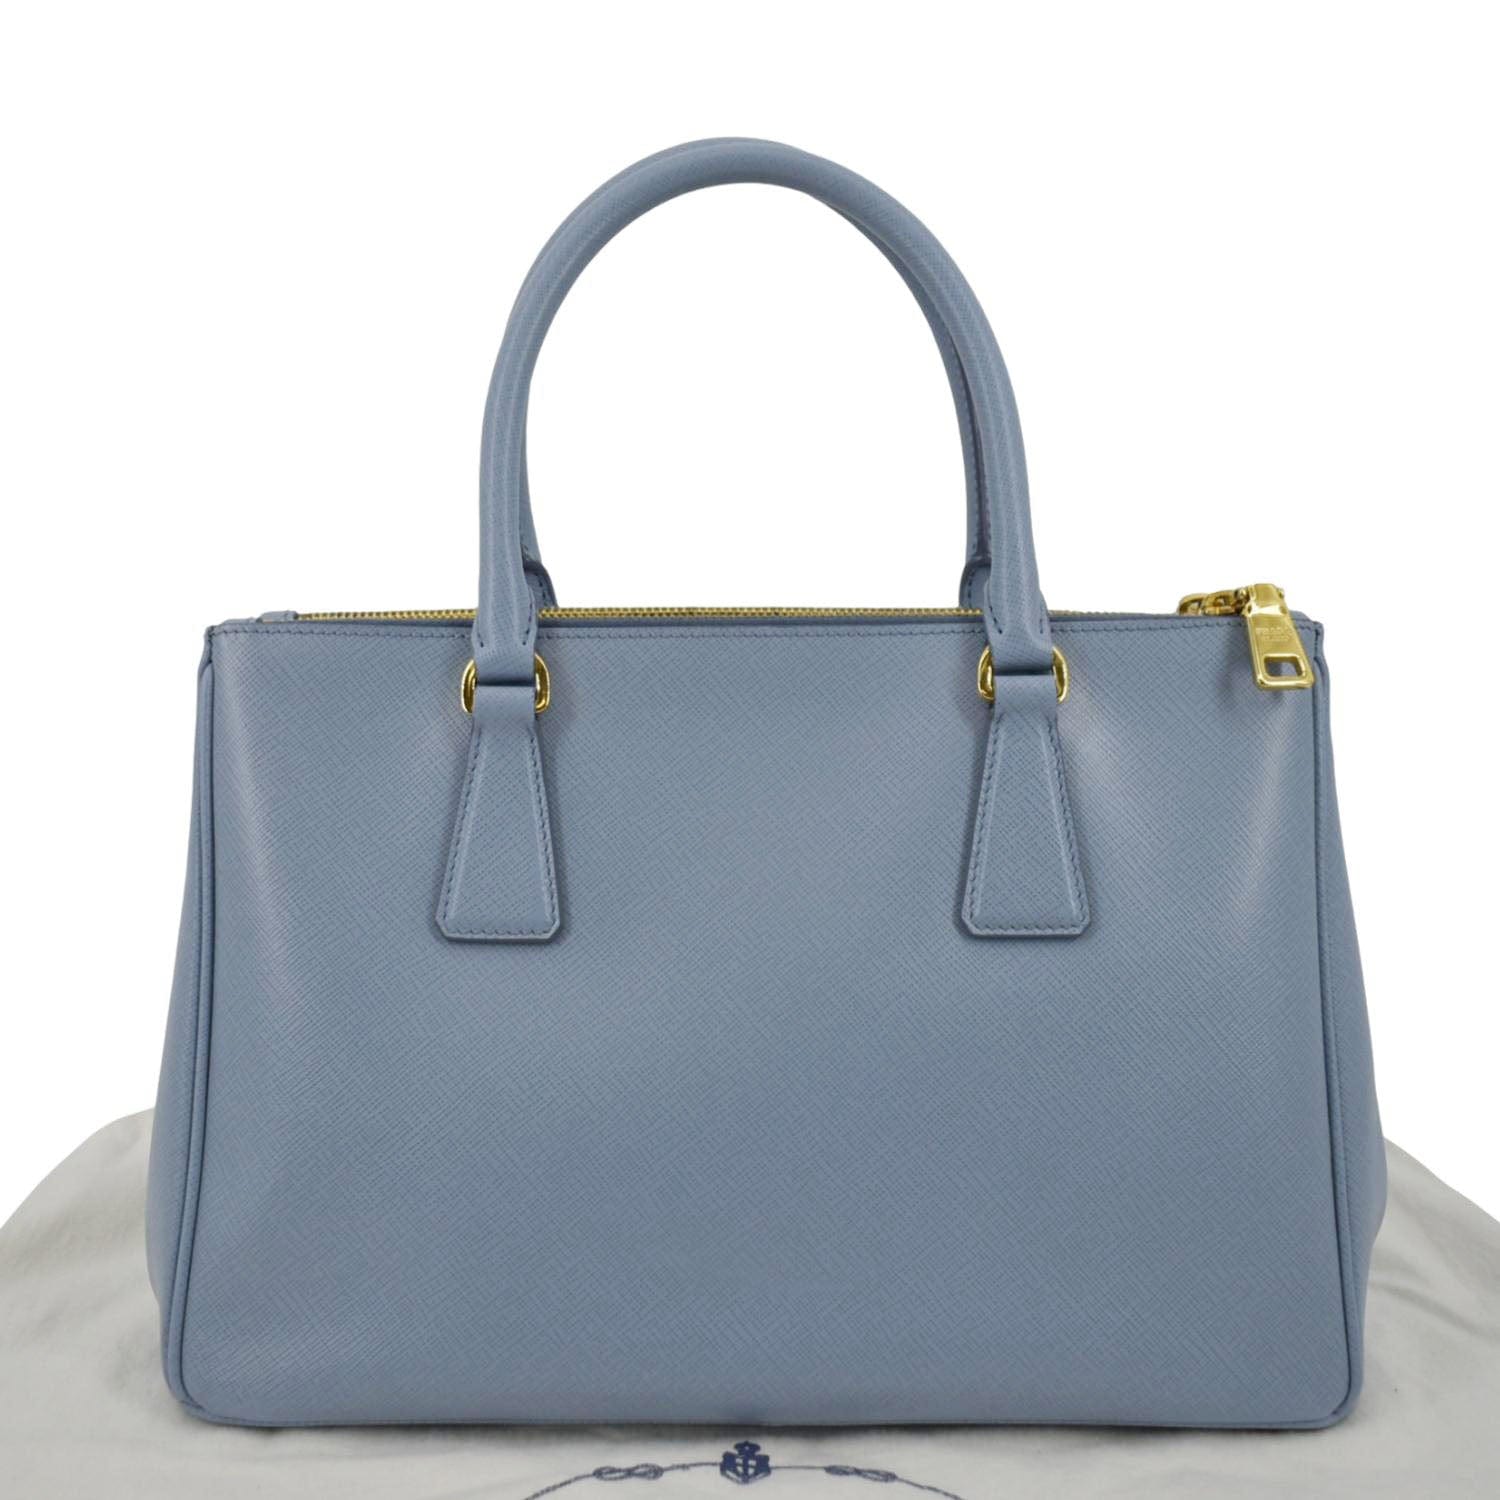 Prada Galleria Tote Bags for Women